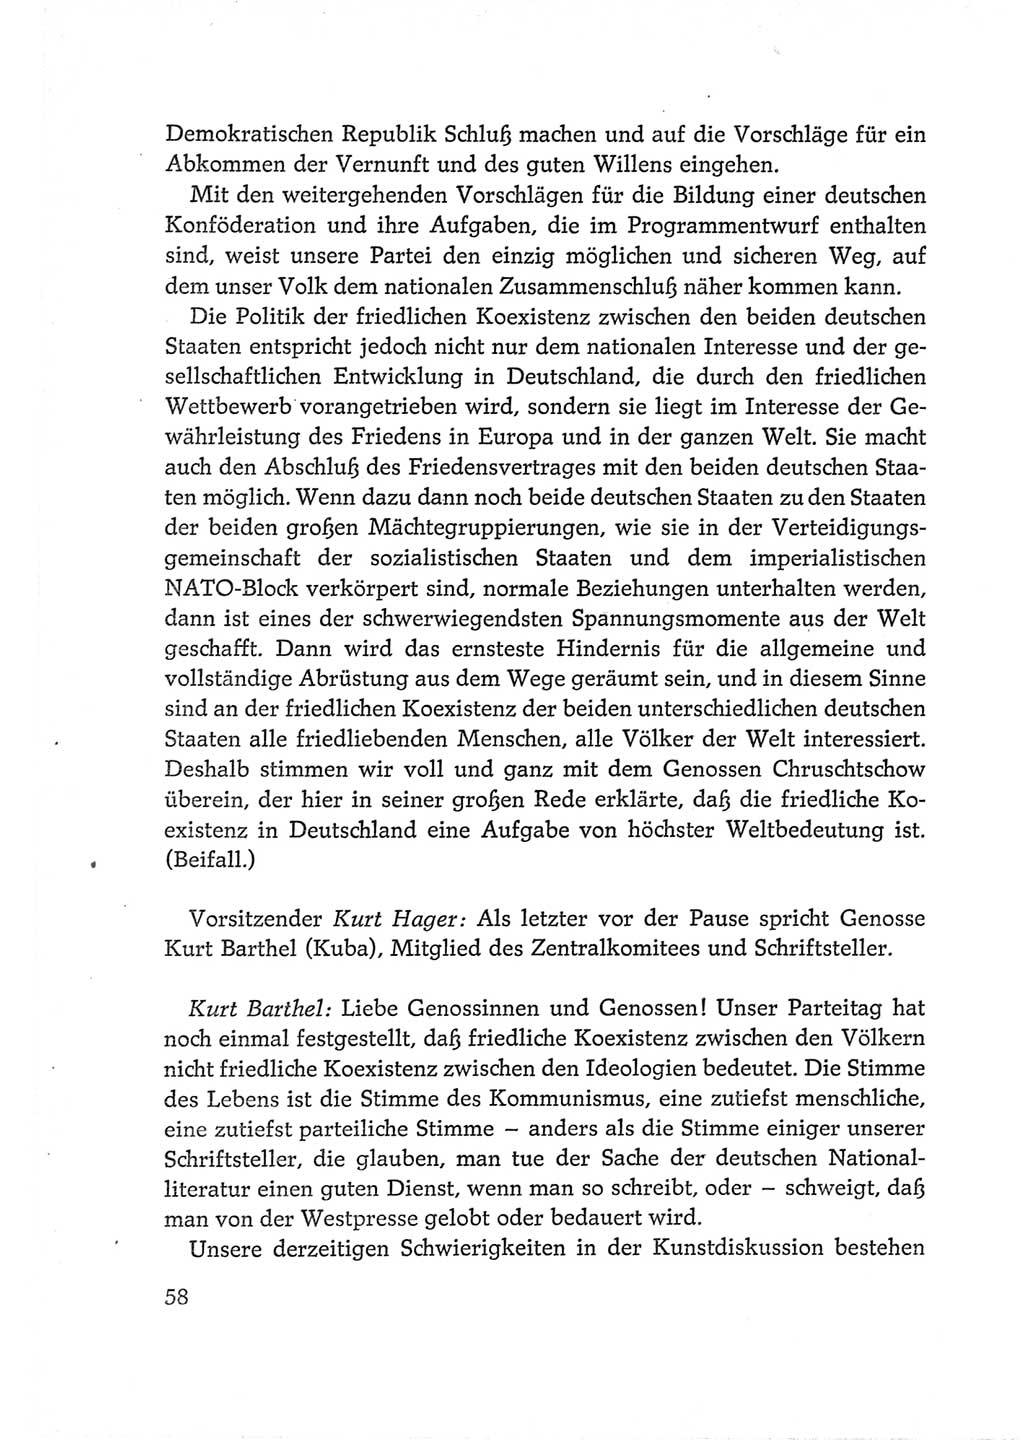 Protokoll der Verhandlungen des Ⅵ. Parteitages der Sozialistischen Einheitspartei Deutschlands (SED) [Deutsche Demokratische Republik (DDR)] 1963, Band Ⅱ, Seite 58 (Prot. Verh. Ⅵ. PT SED DDR 1963, Bd. Ⅱ, S. 58)